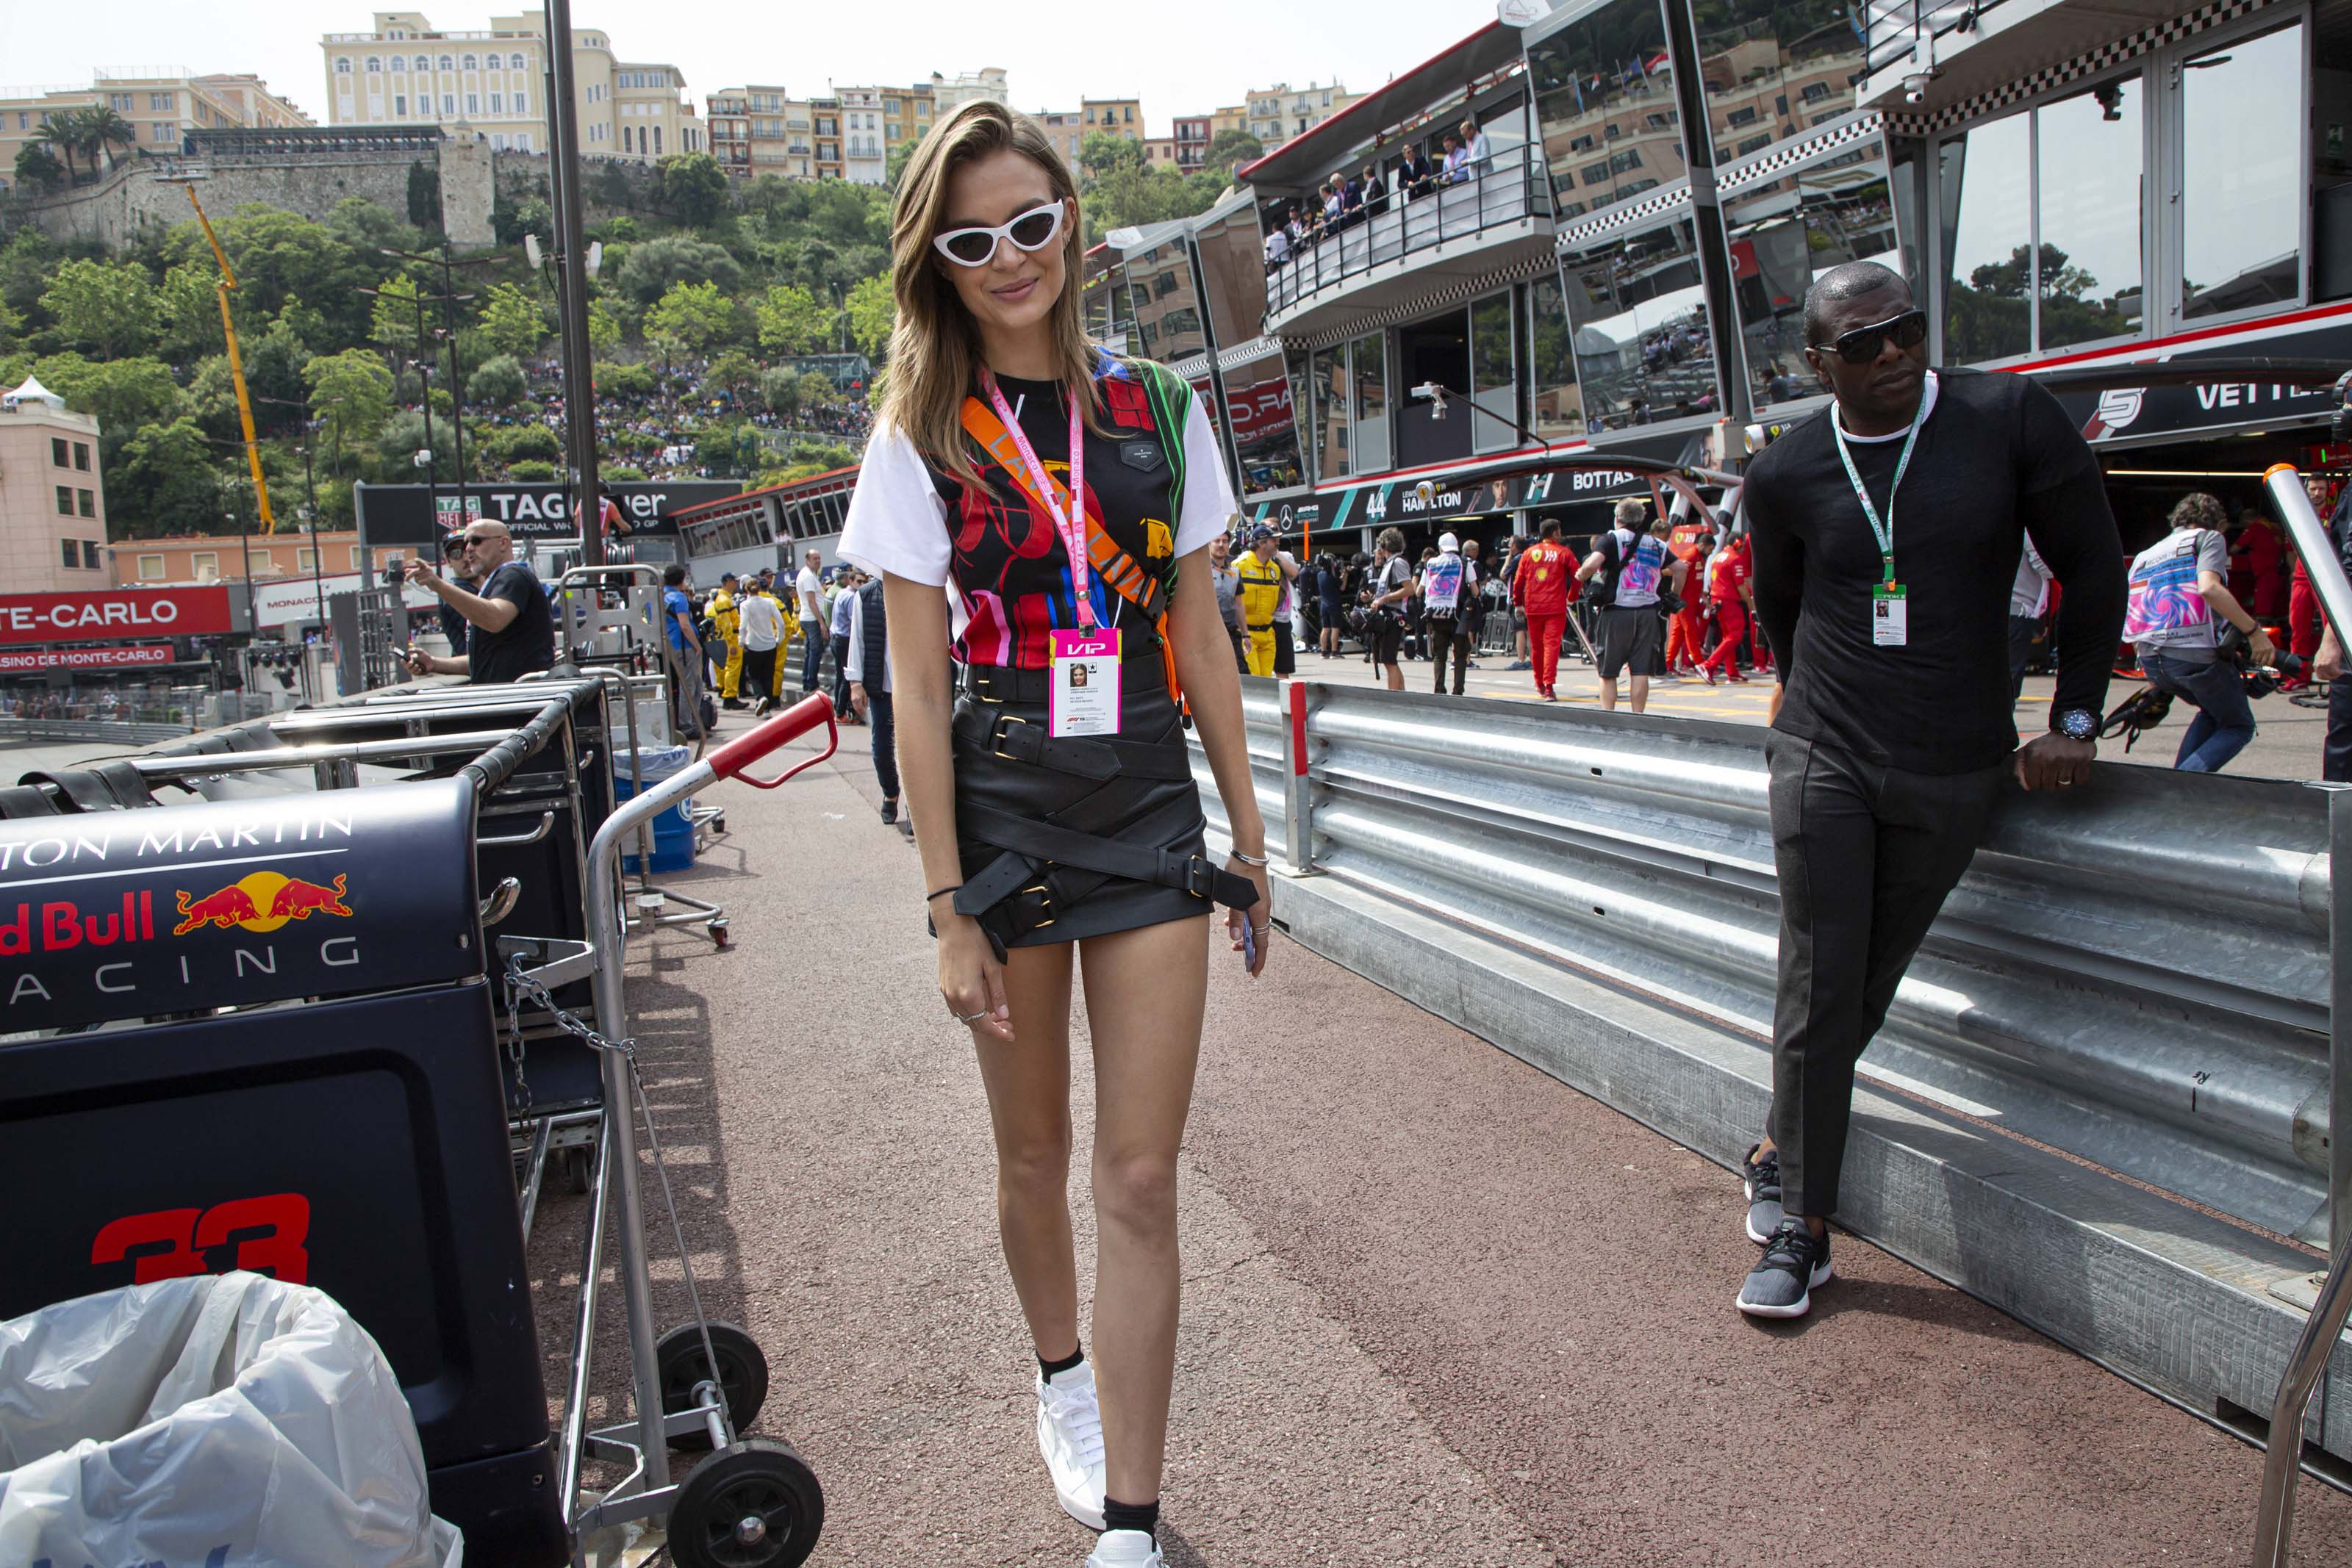 Josephine Skriver attends the 77th Formula 1 Grand Prix